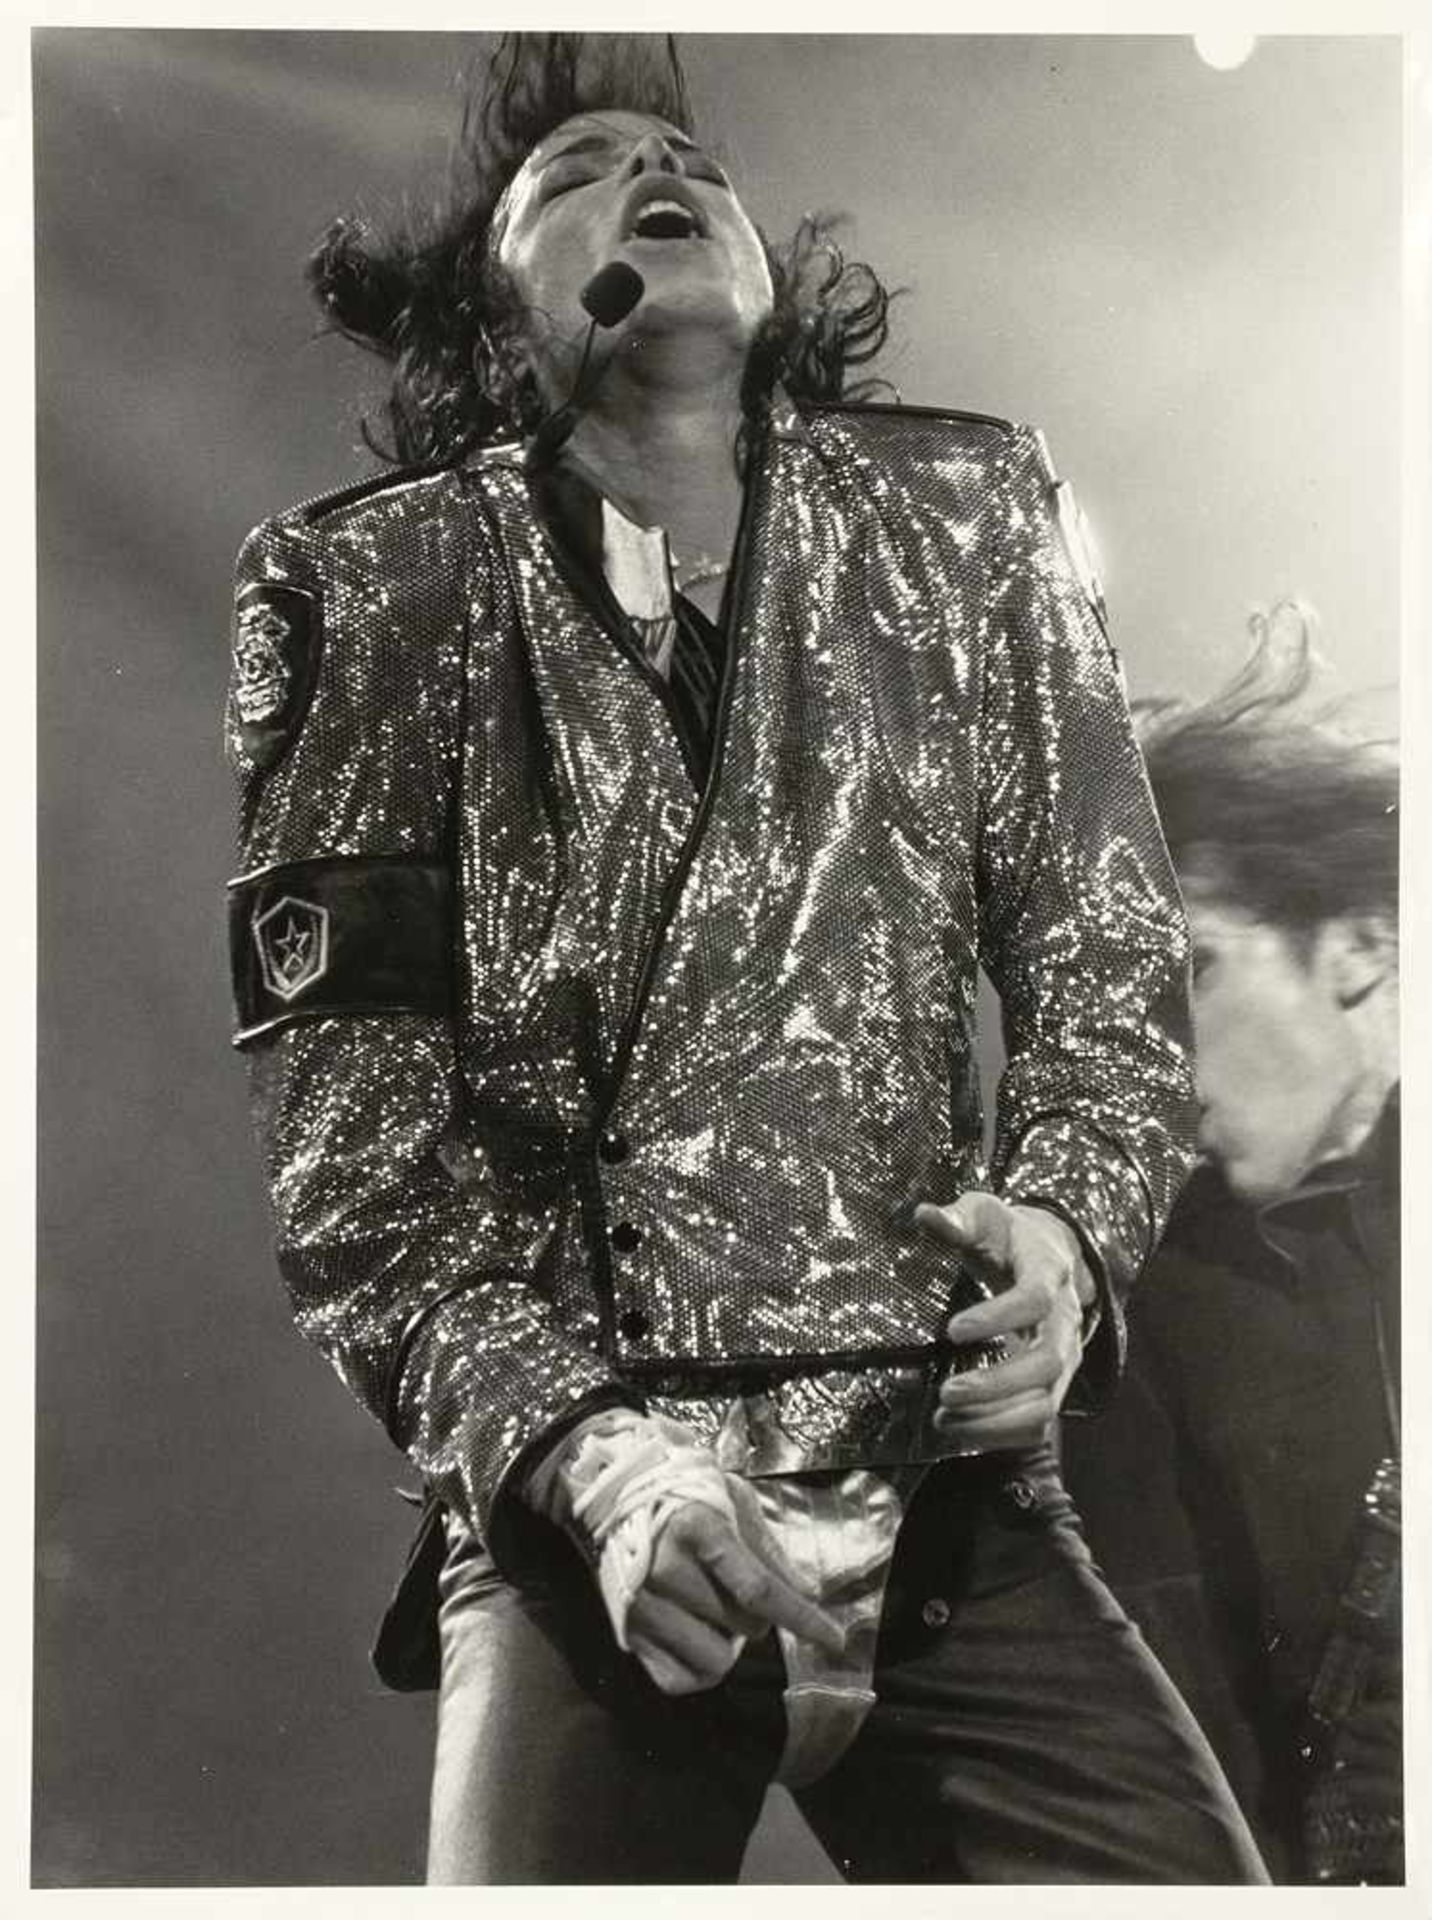 Mimmo Chianura. Jimmy Hendrix, Teatri Brancaccio Roma 25 maggio 1968. Acht Fotografien. 1968. 40 : - Image 9 of 10